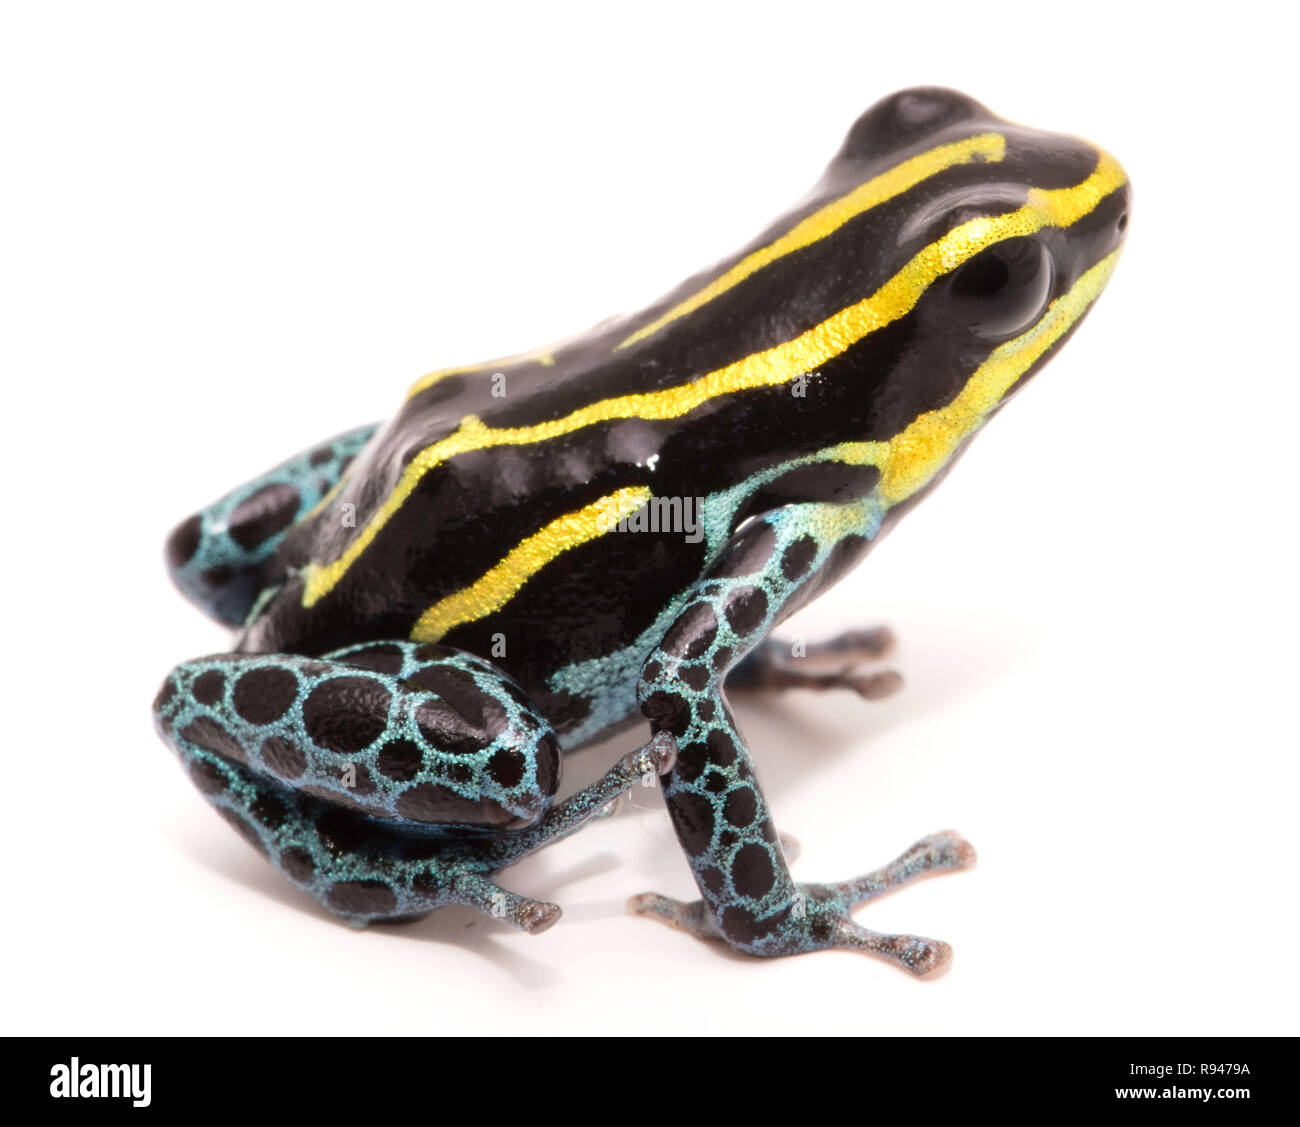 Gelb gestreifte Poison dart Frog, Ranitomeya ventrimaculata. Makro einer kleinen giftigen Tier, aus dem Regenwald des Amazonas. Frosch solated auf Weiß. Stockfoto